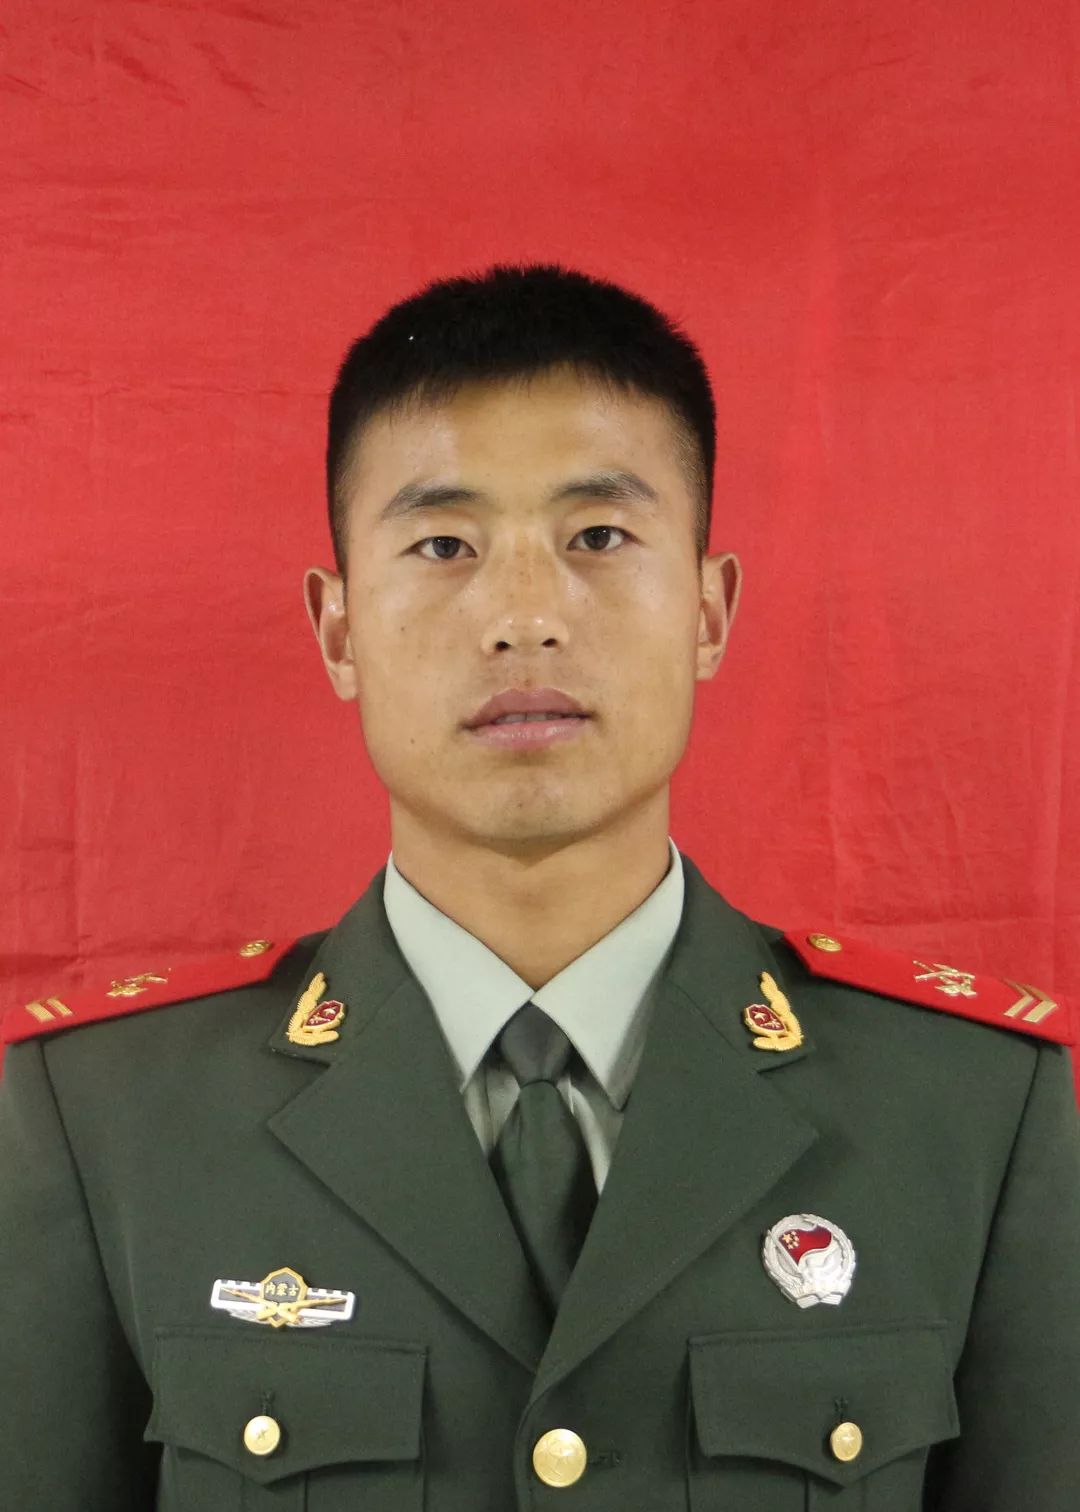 韩玄玄,男,汉族, 1991年12月生,中共党员,武警内蒙古总队机动支队特战